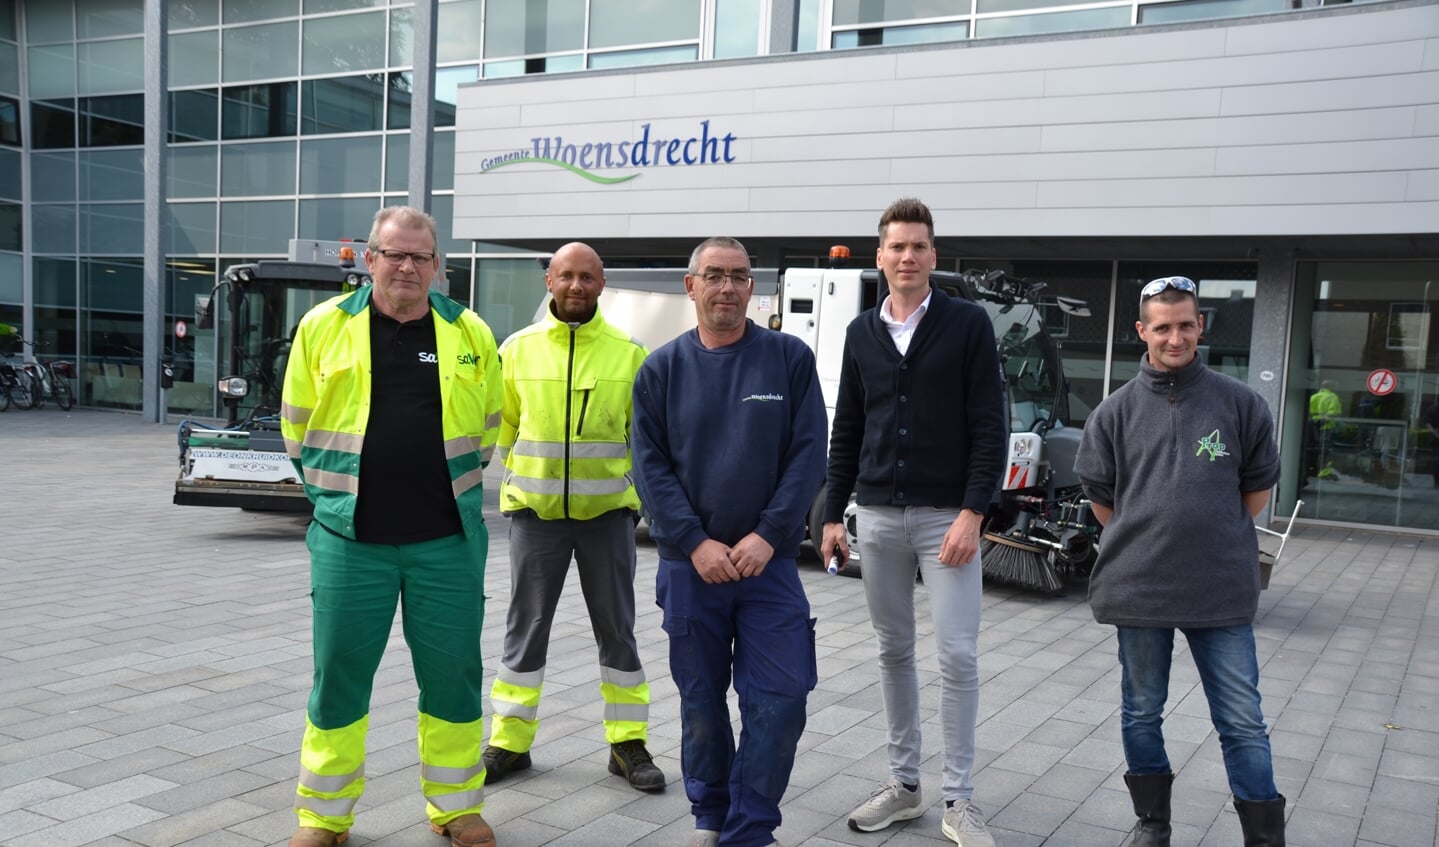 Medewerkers van de onkruidbestrijding gemeente Woensdrecht met wethouder Van Agtmaal bij de veegwagen.